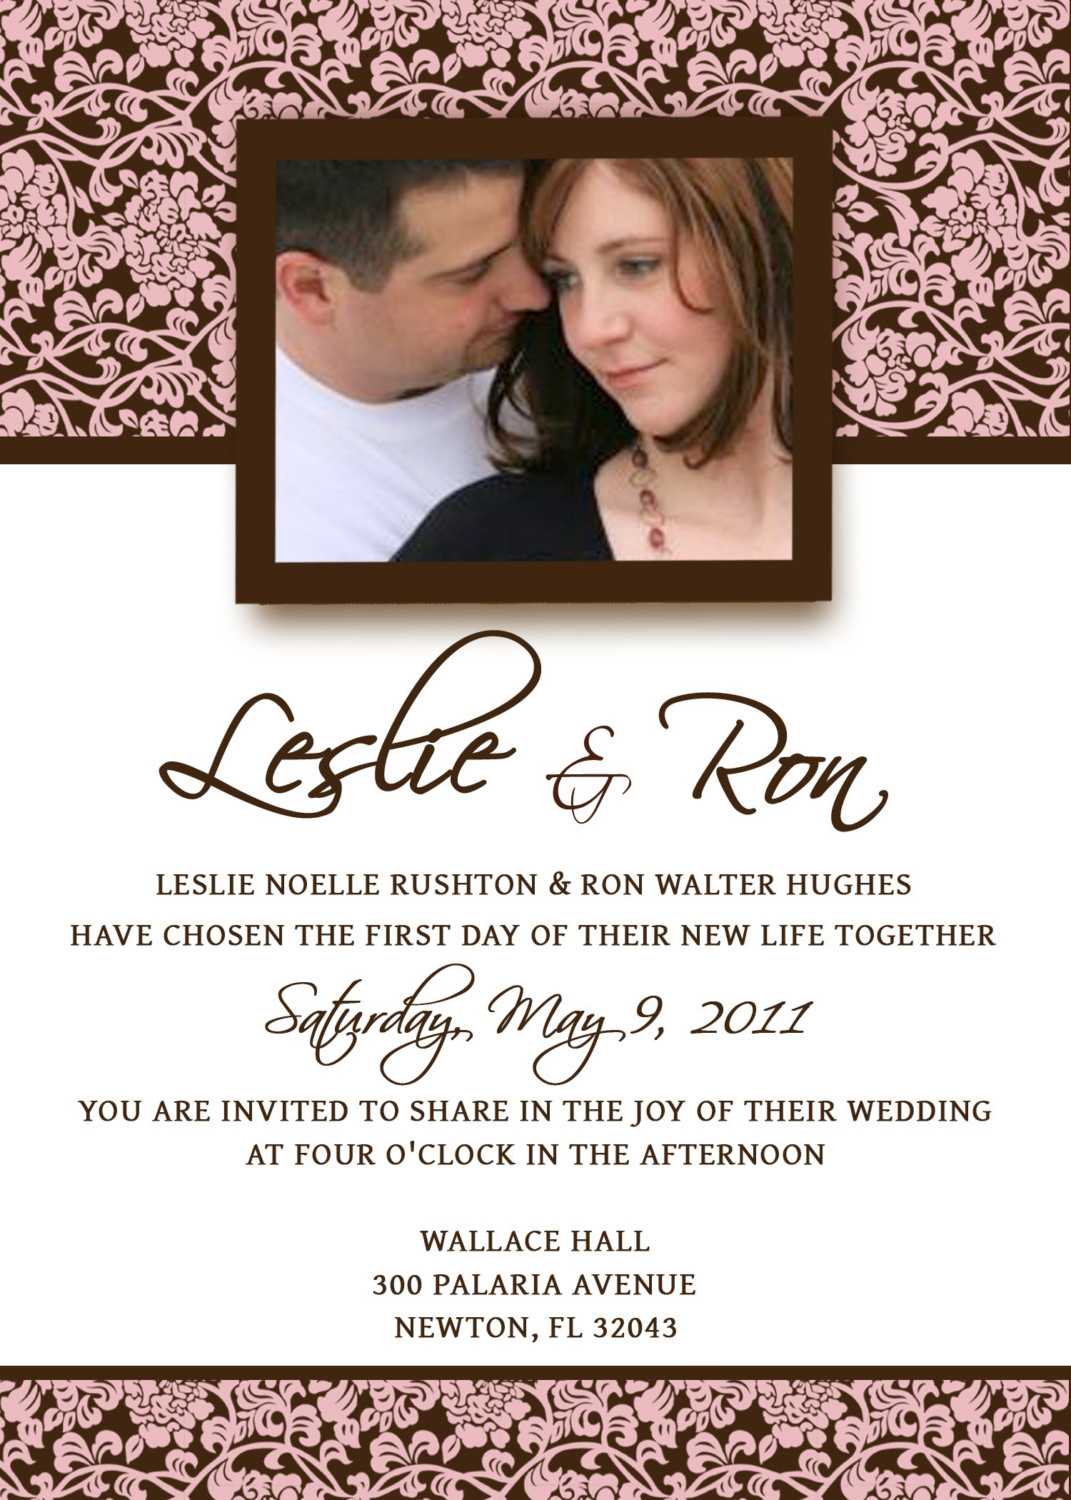 Wedding E Invite Design - Yaser.vtngcf With Free E Wedding Invitation Card Templates